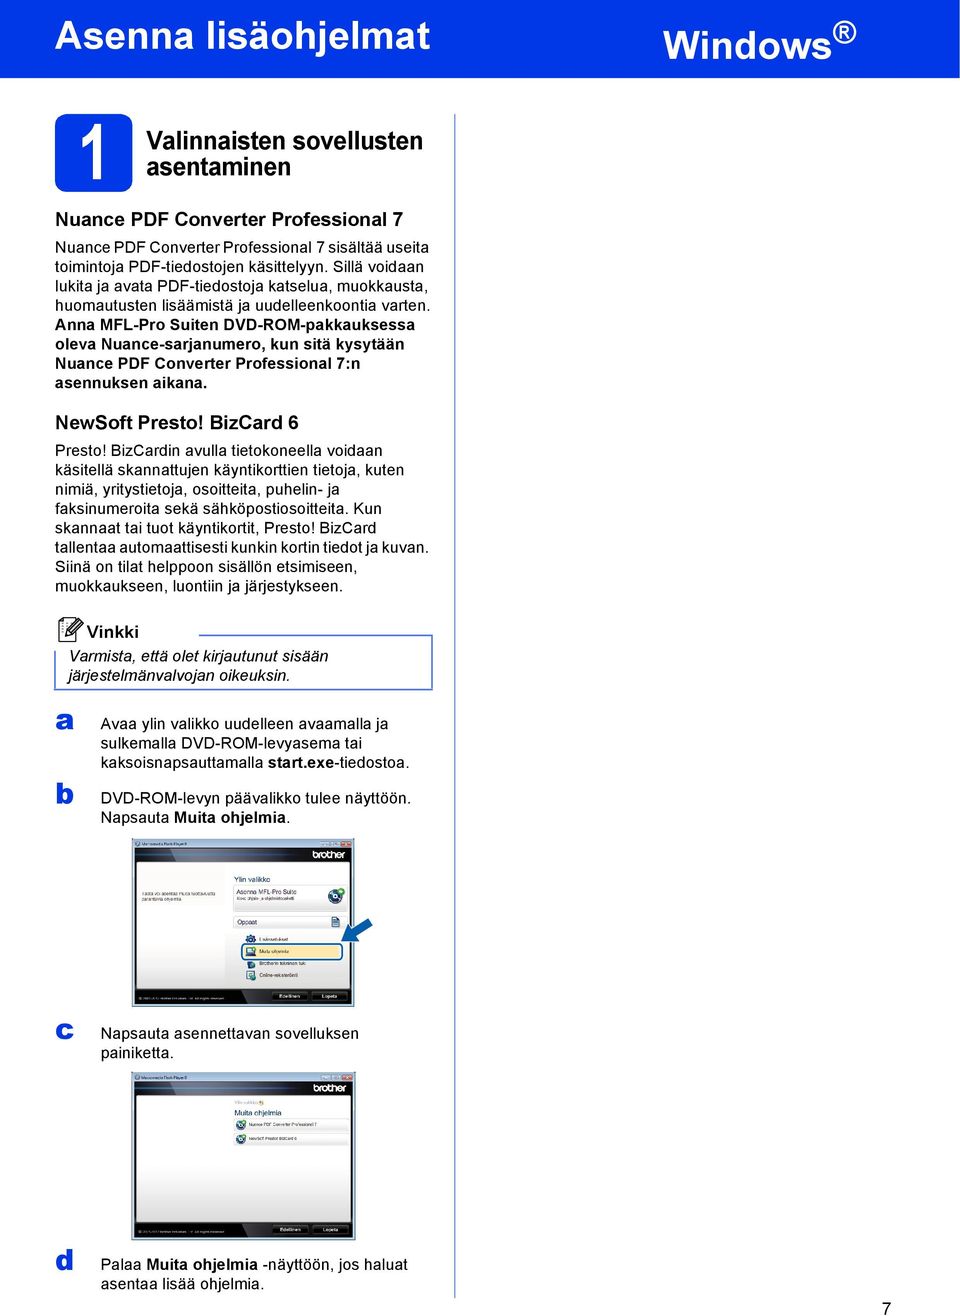 Ann MFL-Pro Suiten DVD-ROM-pkkuksess olev Nune-srjnumero, kun sitä kysytään Nune PDF Converter Professionl 7:n sennuksen ikn. NewSoft Presto! BizCrd 6 Presto!